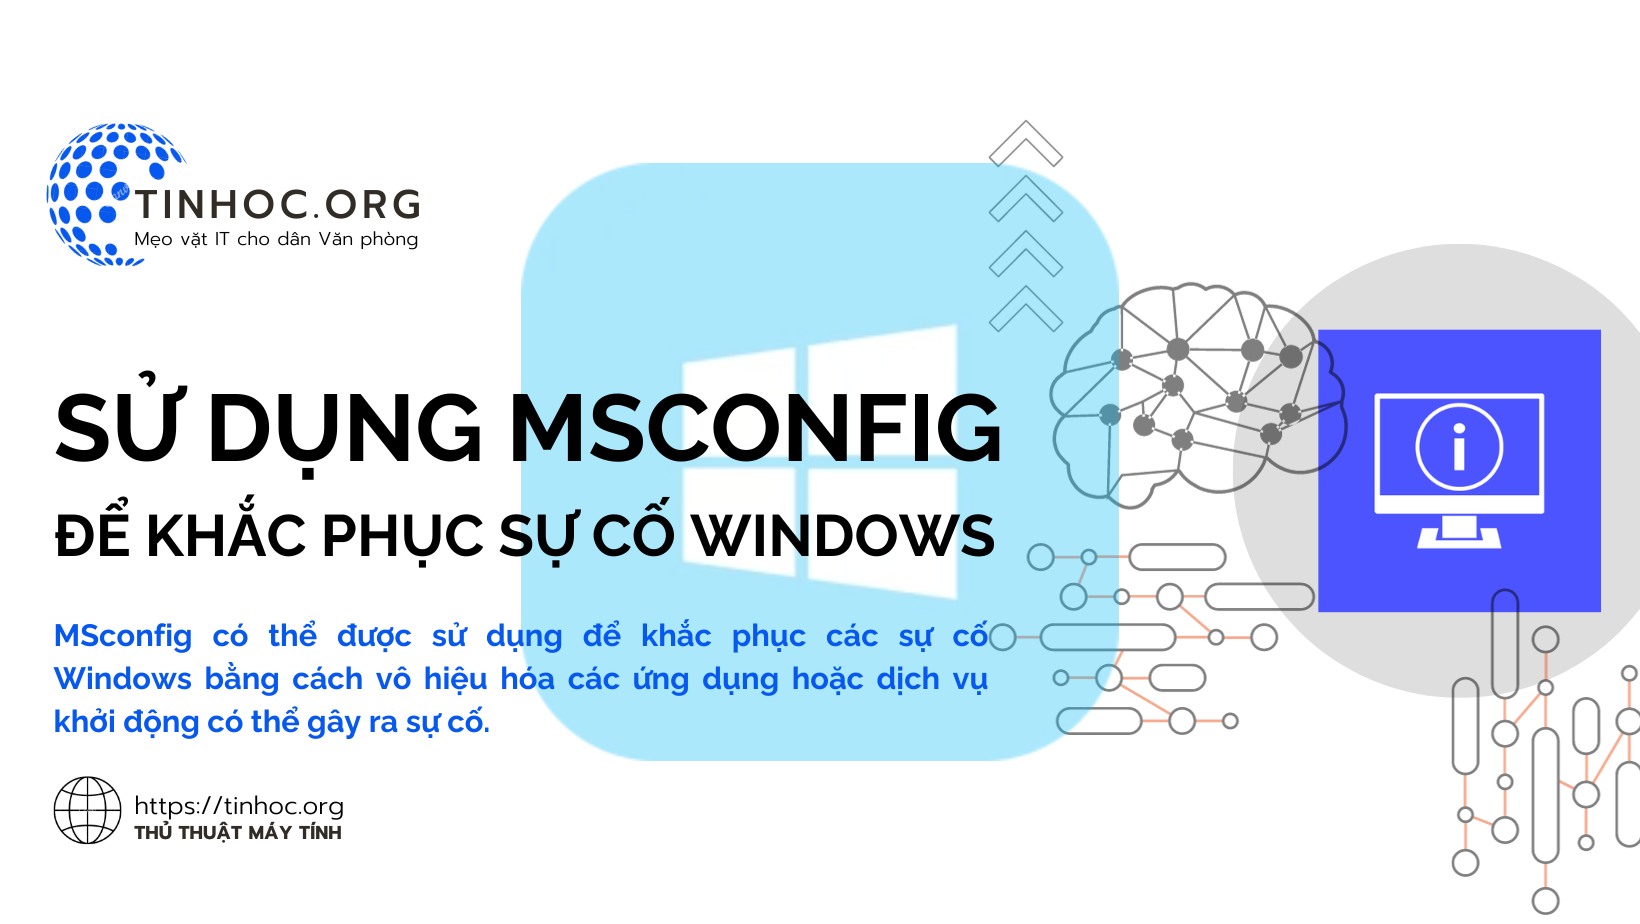 MSconfig có thể được sử dụng để khắc phục các sự cố Windows bằng cách vô hiệu hóa các ứng dụng hoặc dịch vụ khởi động có thể gây ra sự cố.